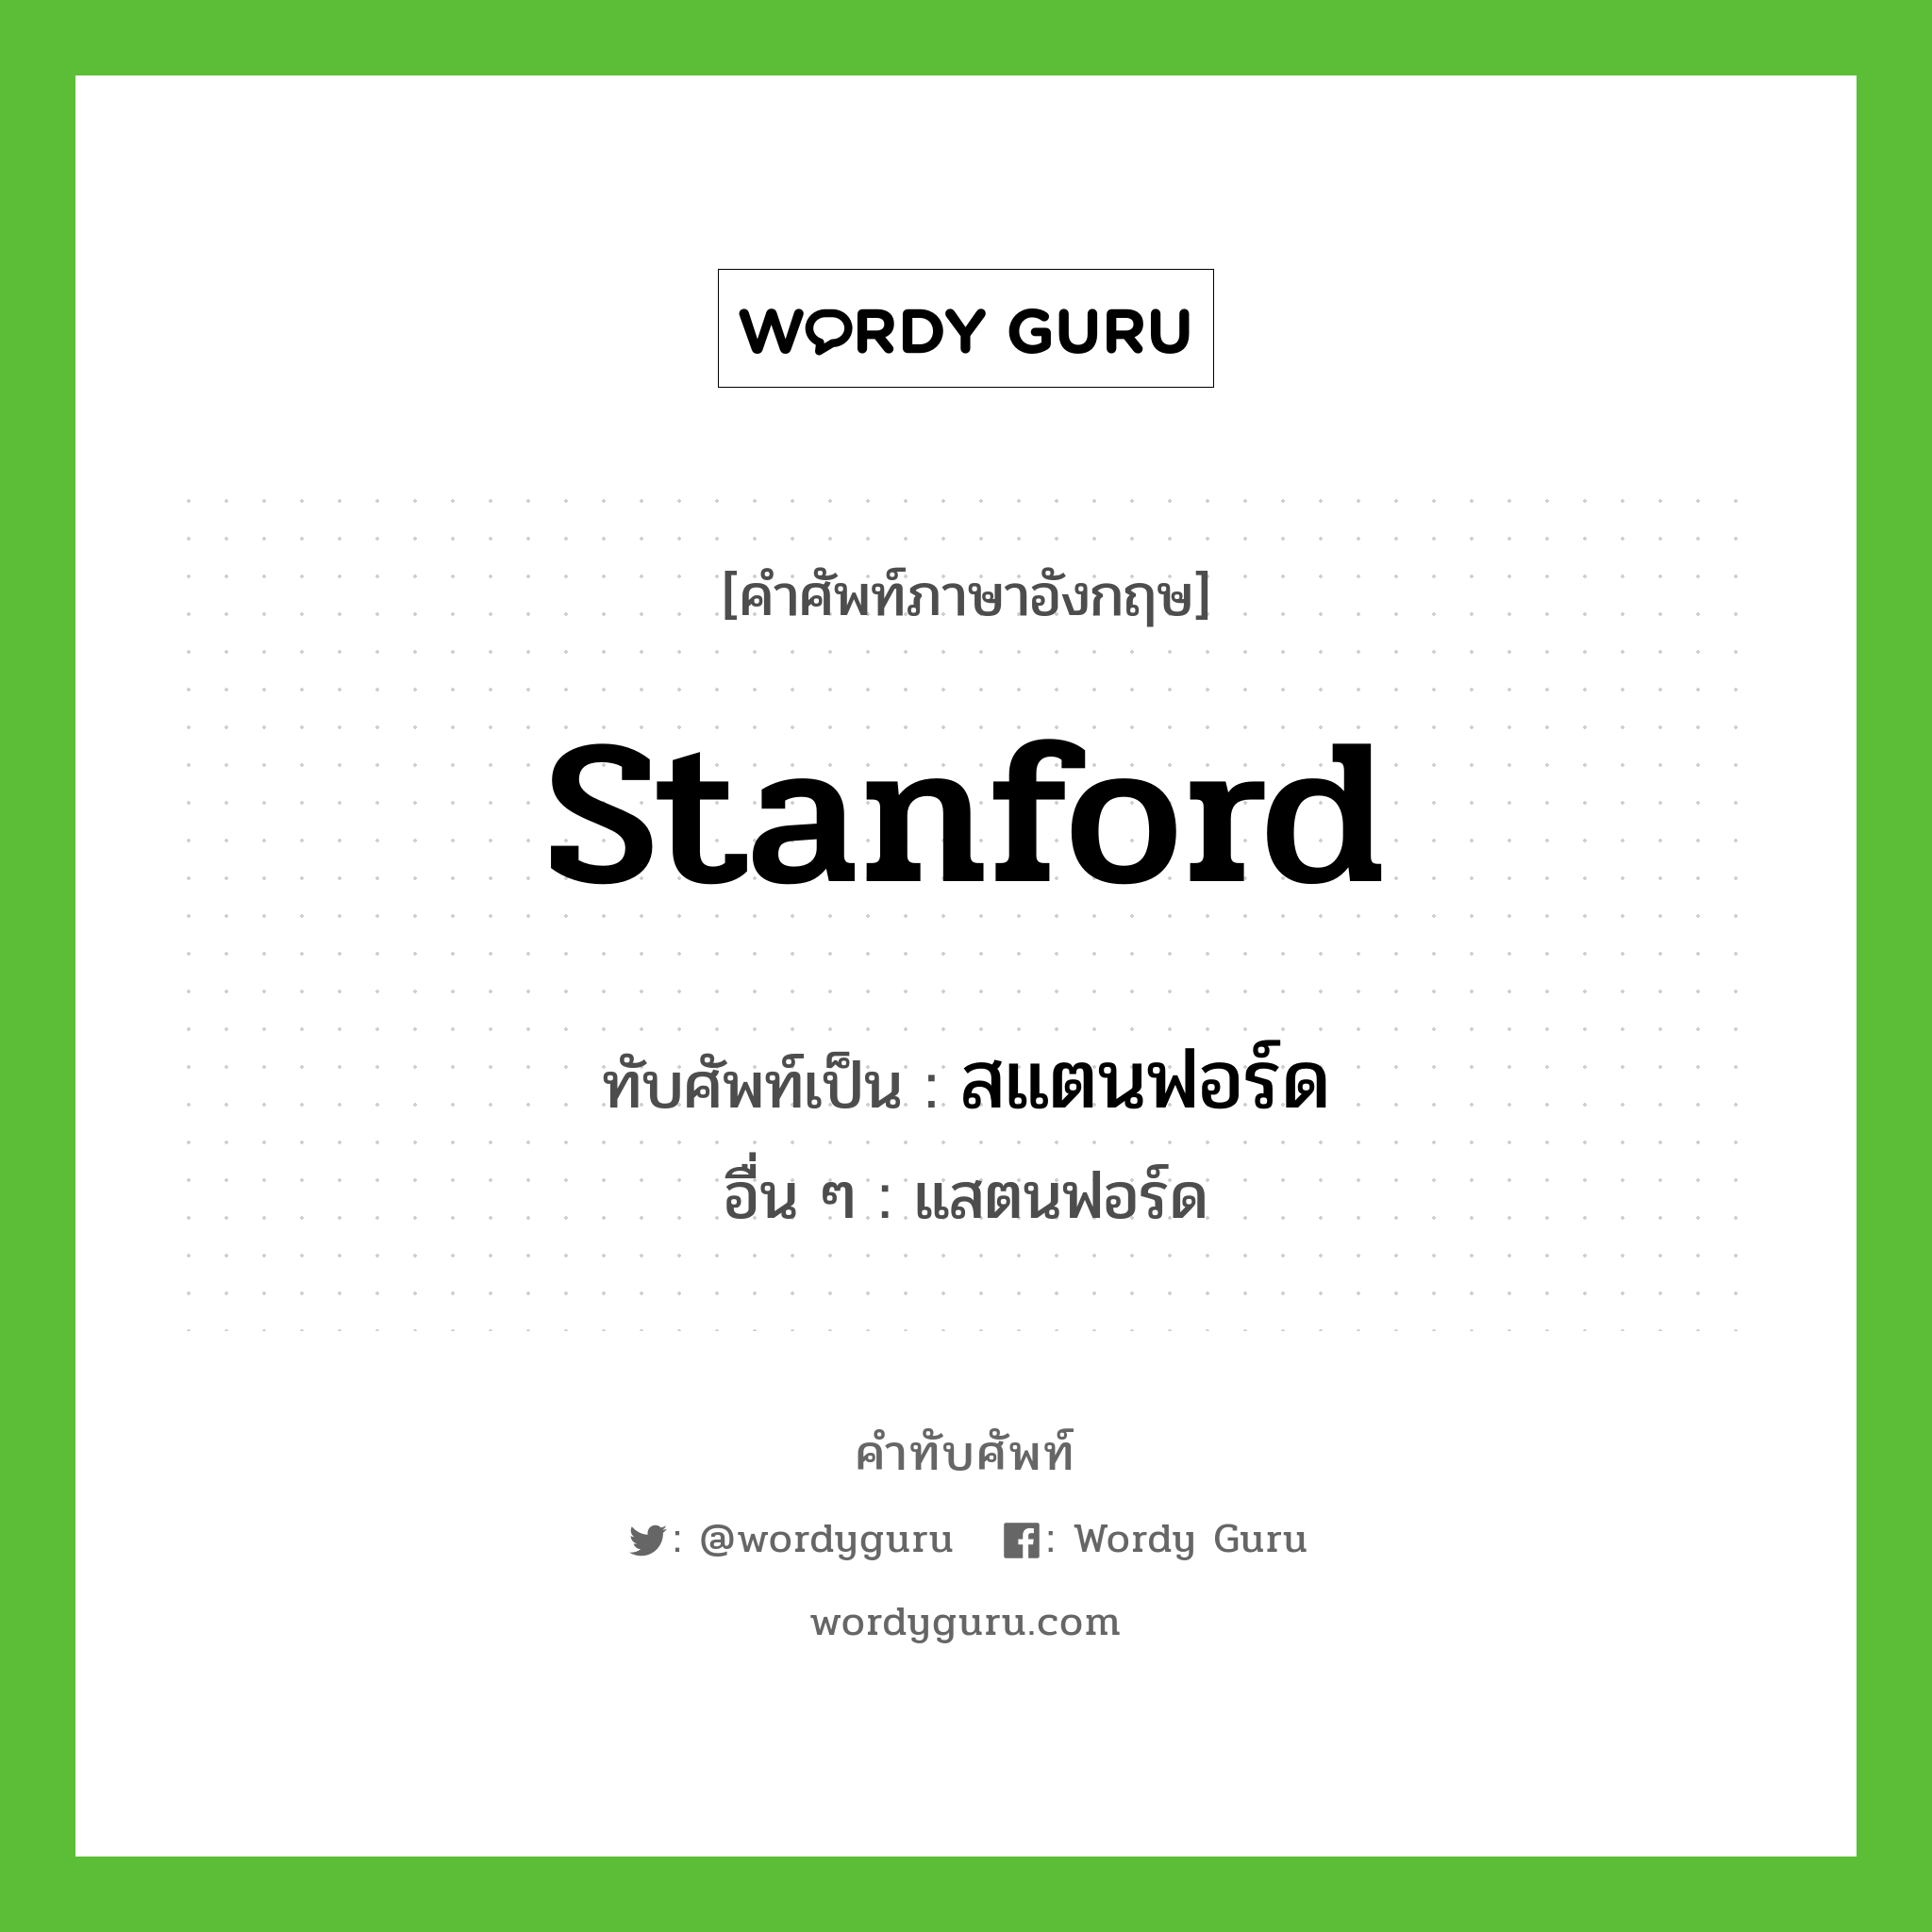 Stanford เขียนเป็นคำไทยว่าอะไร?, คำศัพท์ภาษาอังกฤษ Stanford ทับศัพท์เป็น สแตนฟอร์ด อื่น ๆ แสตนฟอร์ด